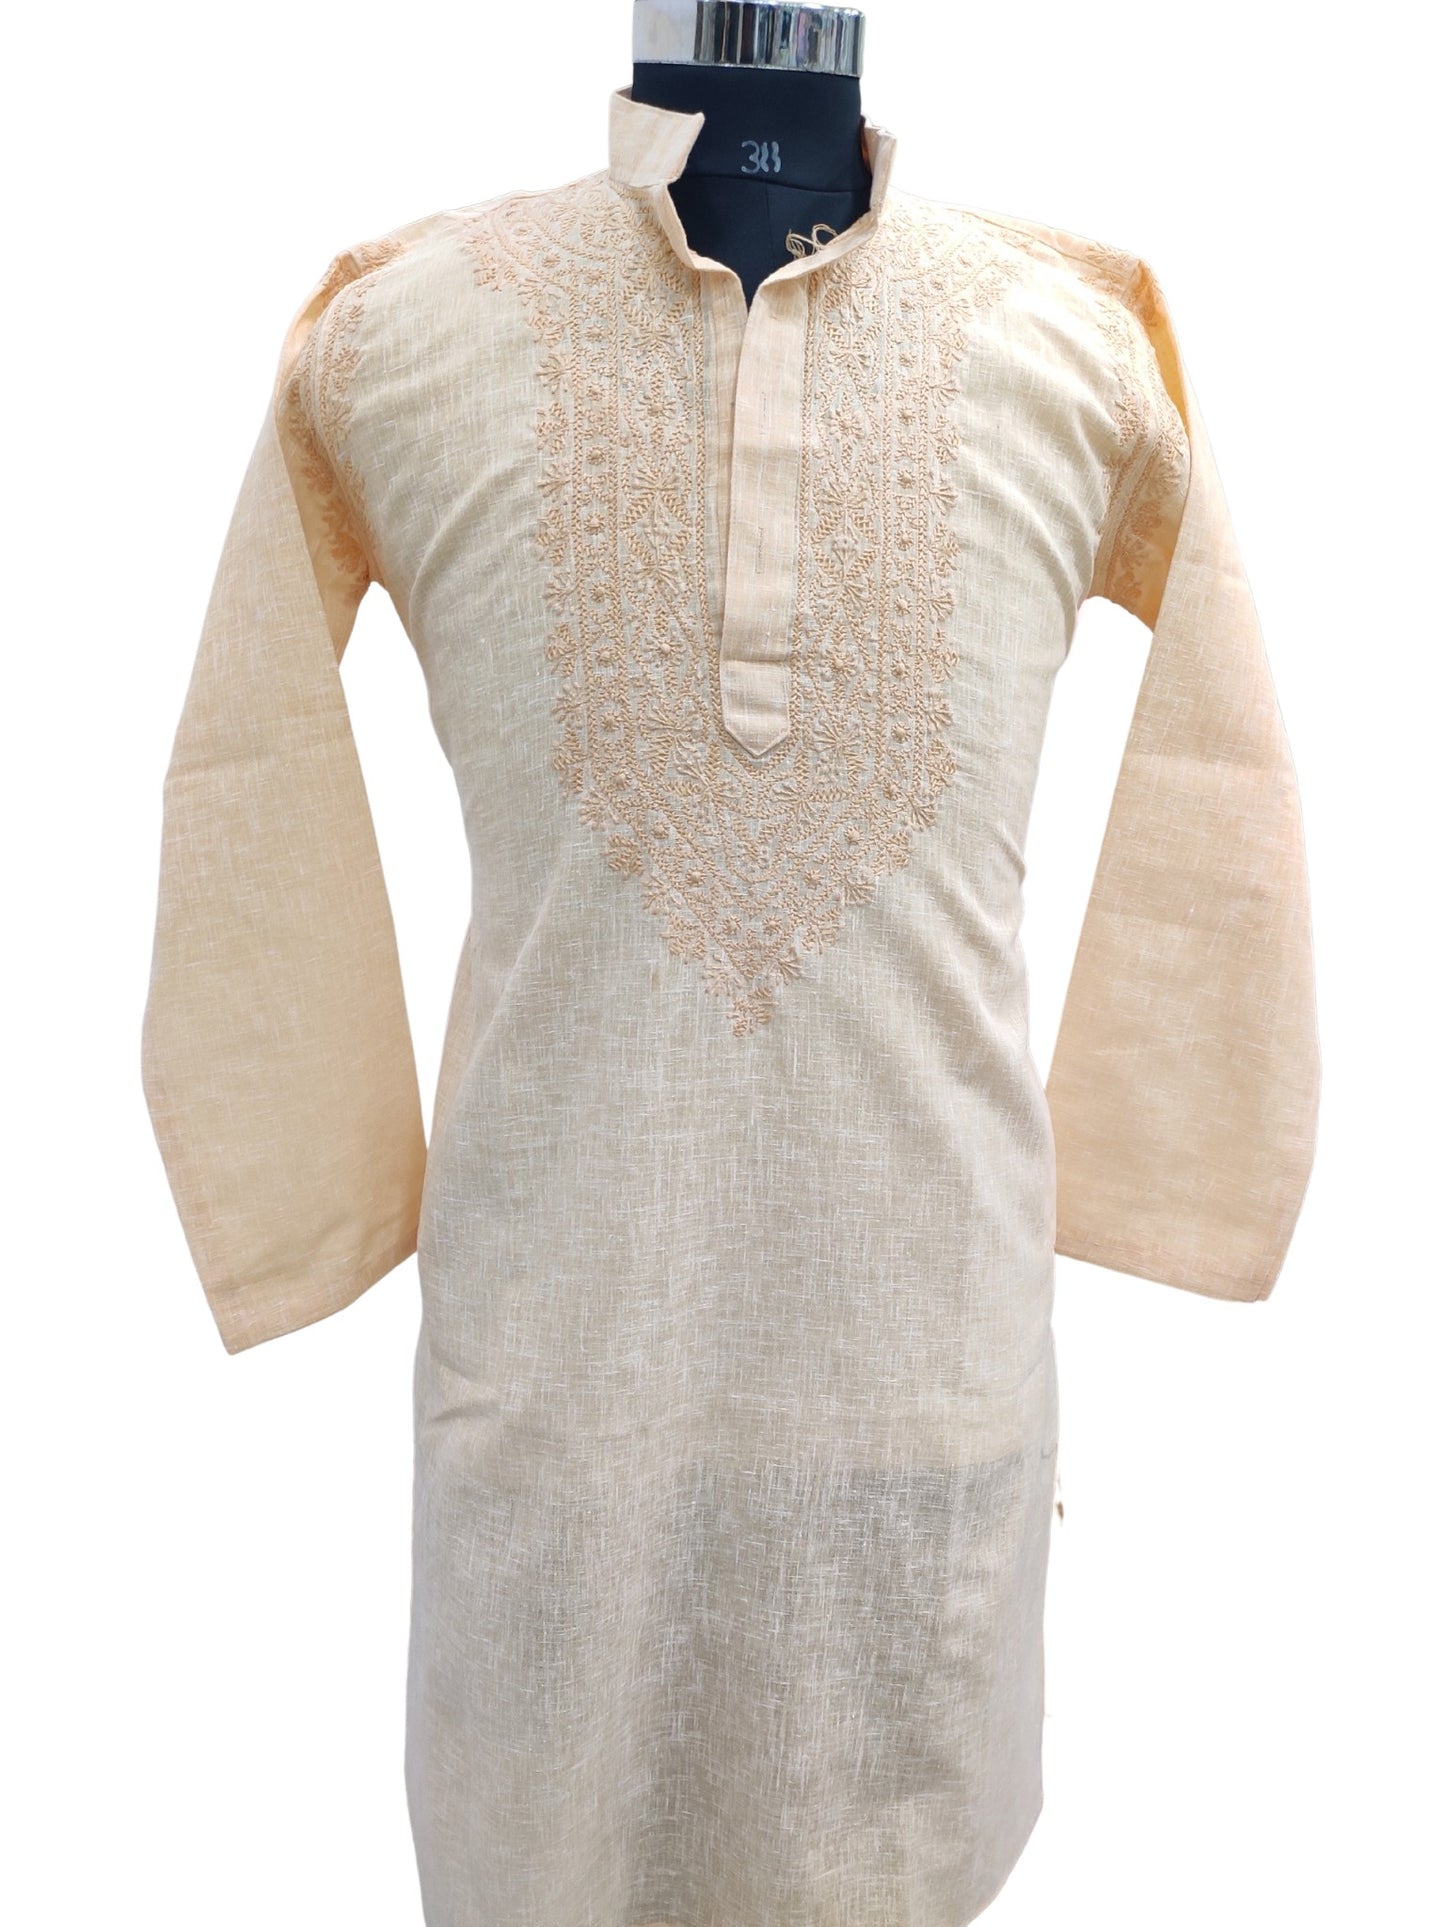 Shyamal Chikan Hand Embroidered Peach Cotton Lucknowi Chikankari Men's Kurta – S19032